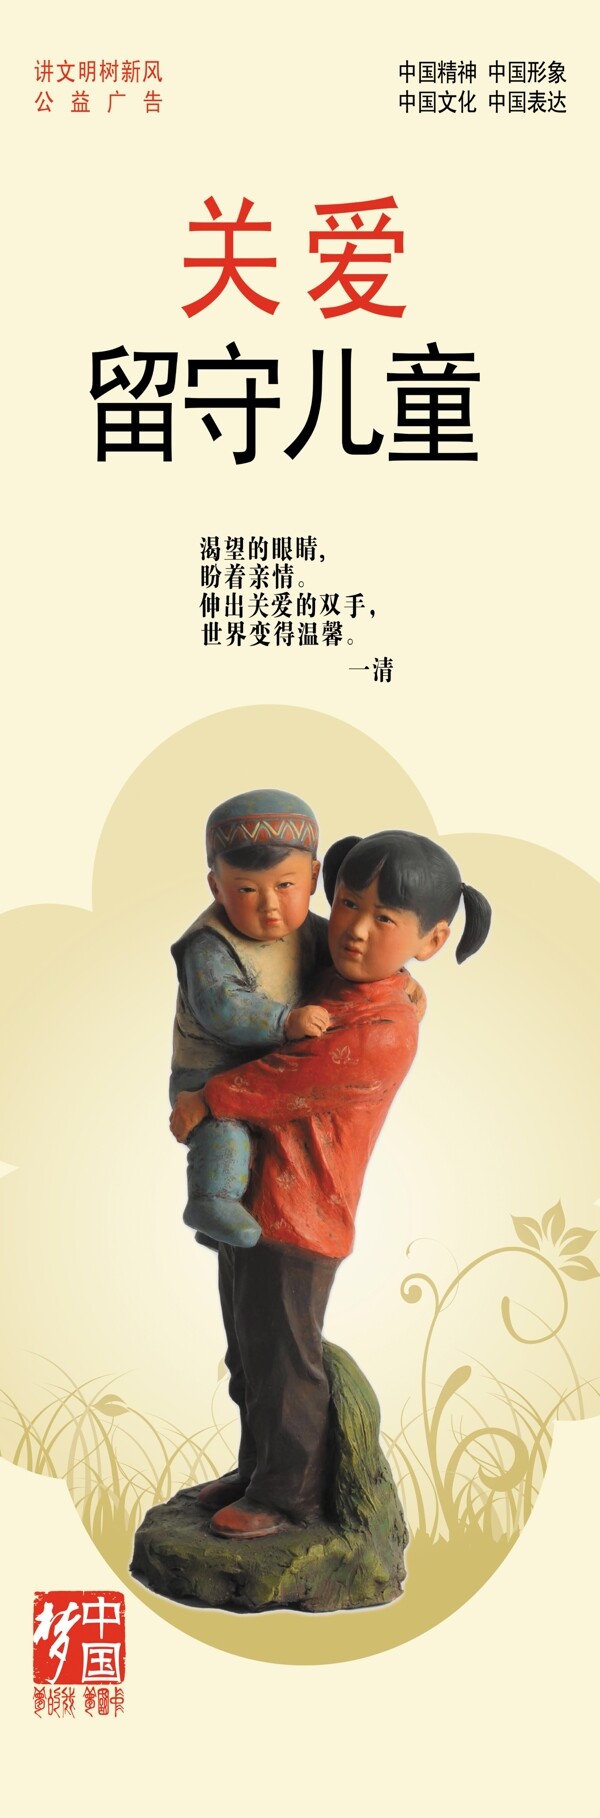 关爱留守儿童中国梦瓷娃娃